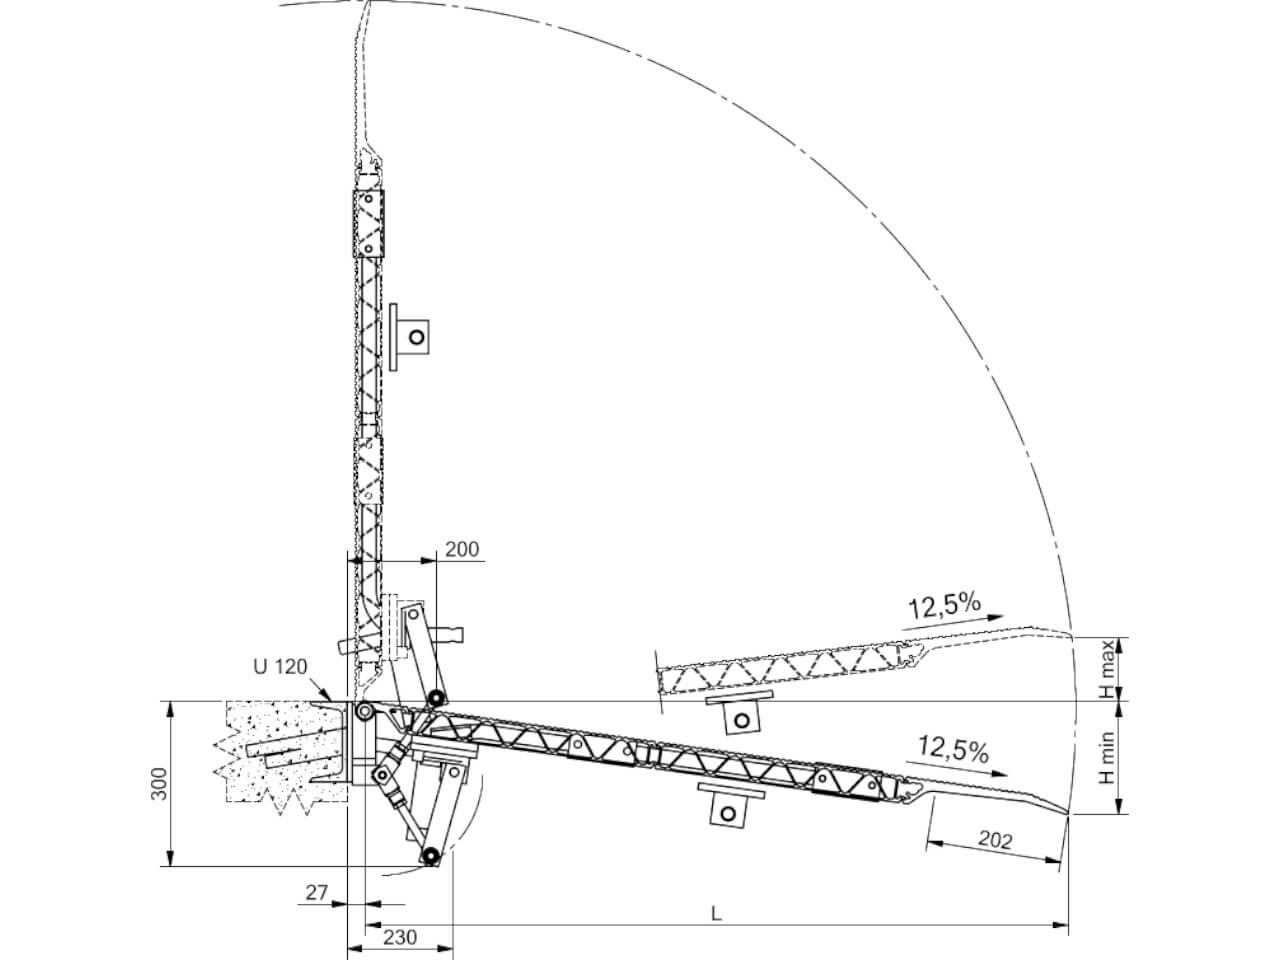 zeichnung einer stationaeren skb ueberladebruecke ohne federhebesystem